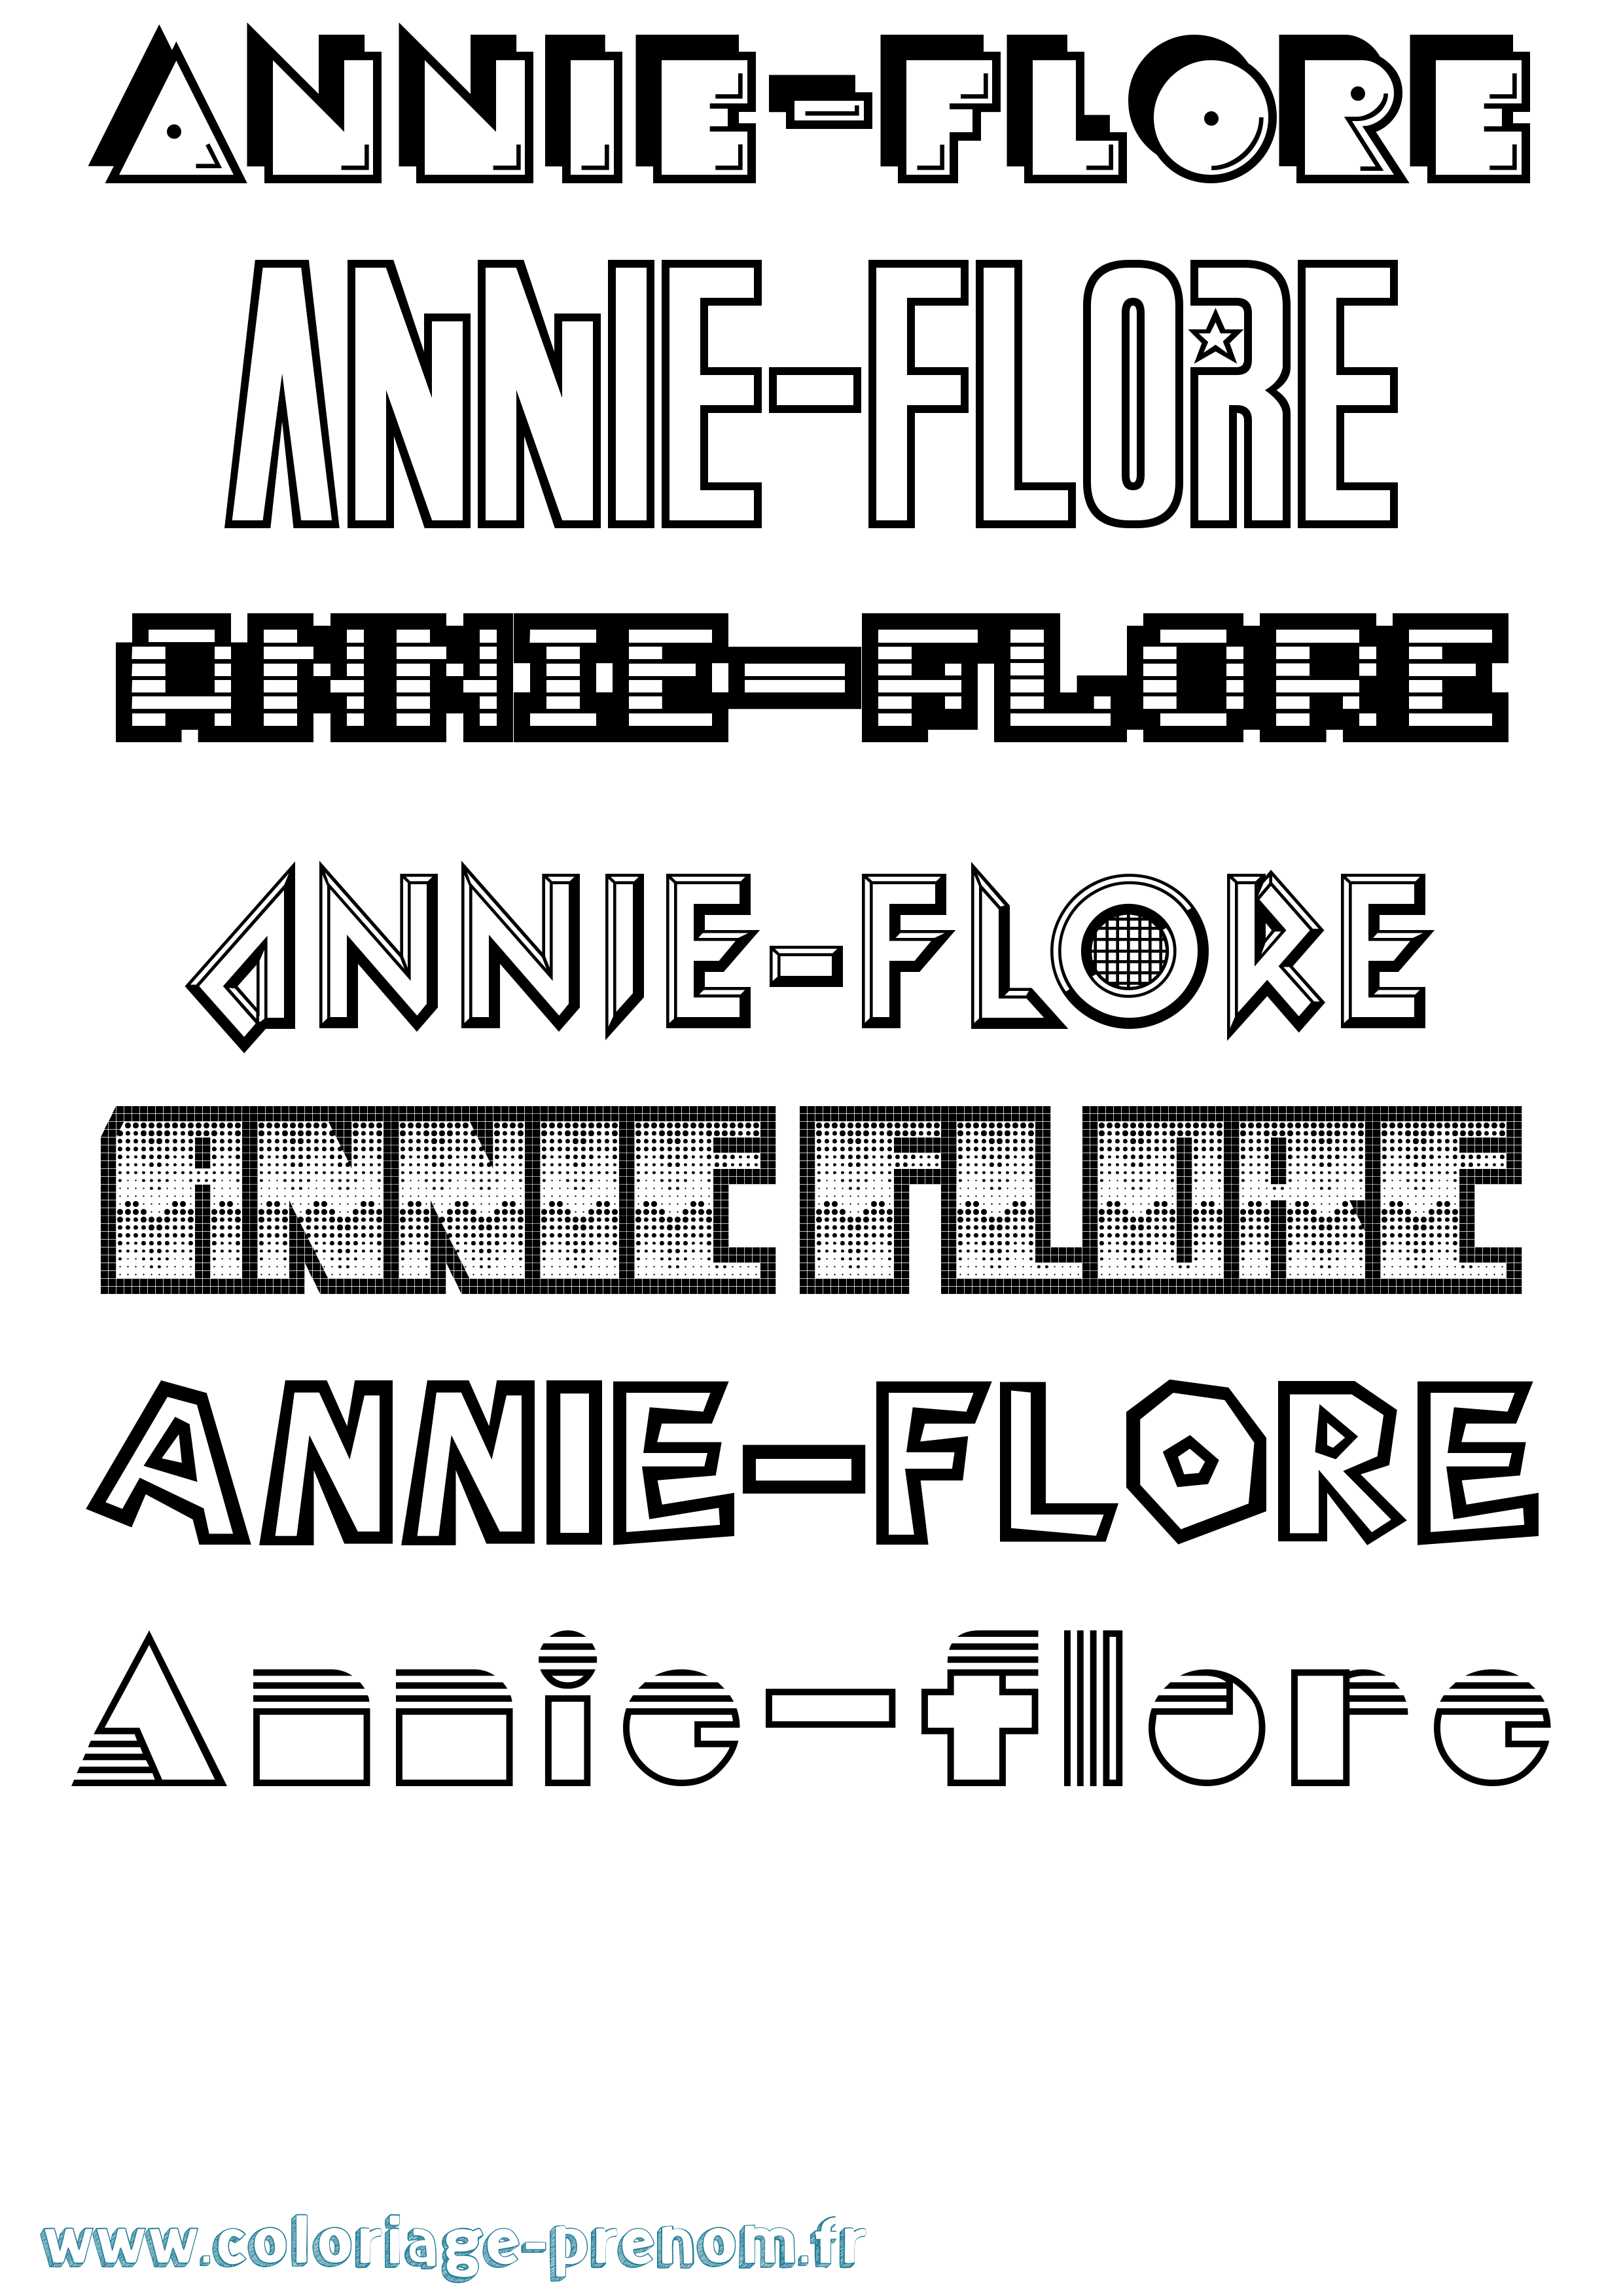 Coloriage prénom Annie-Flore Jeux Vidéos